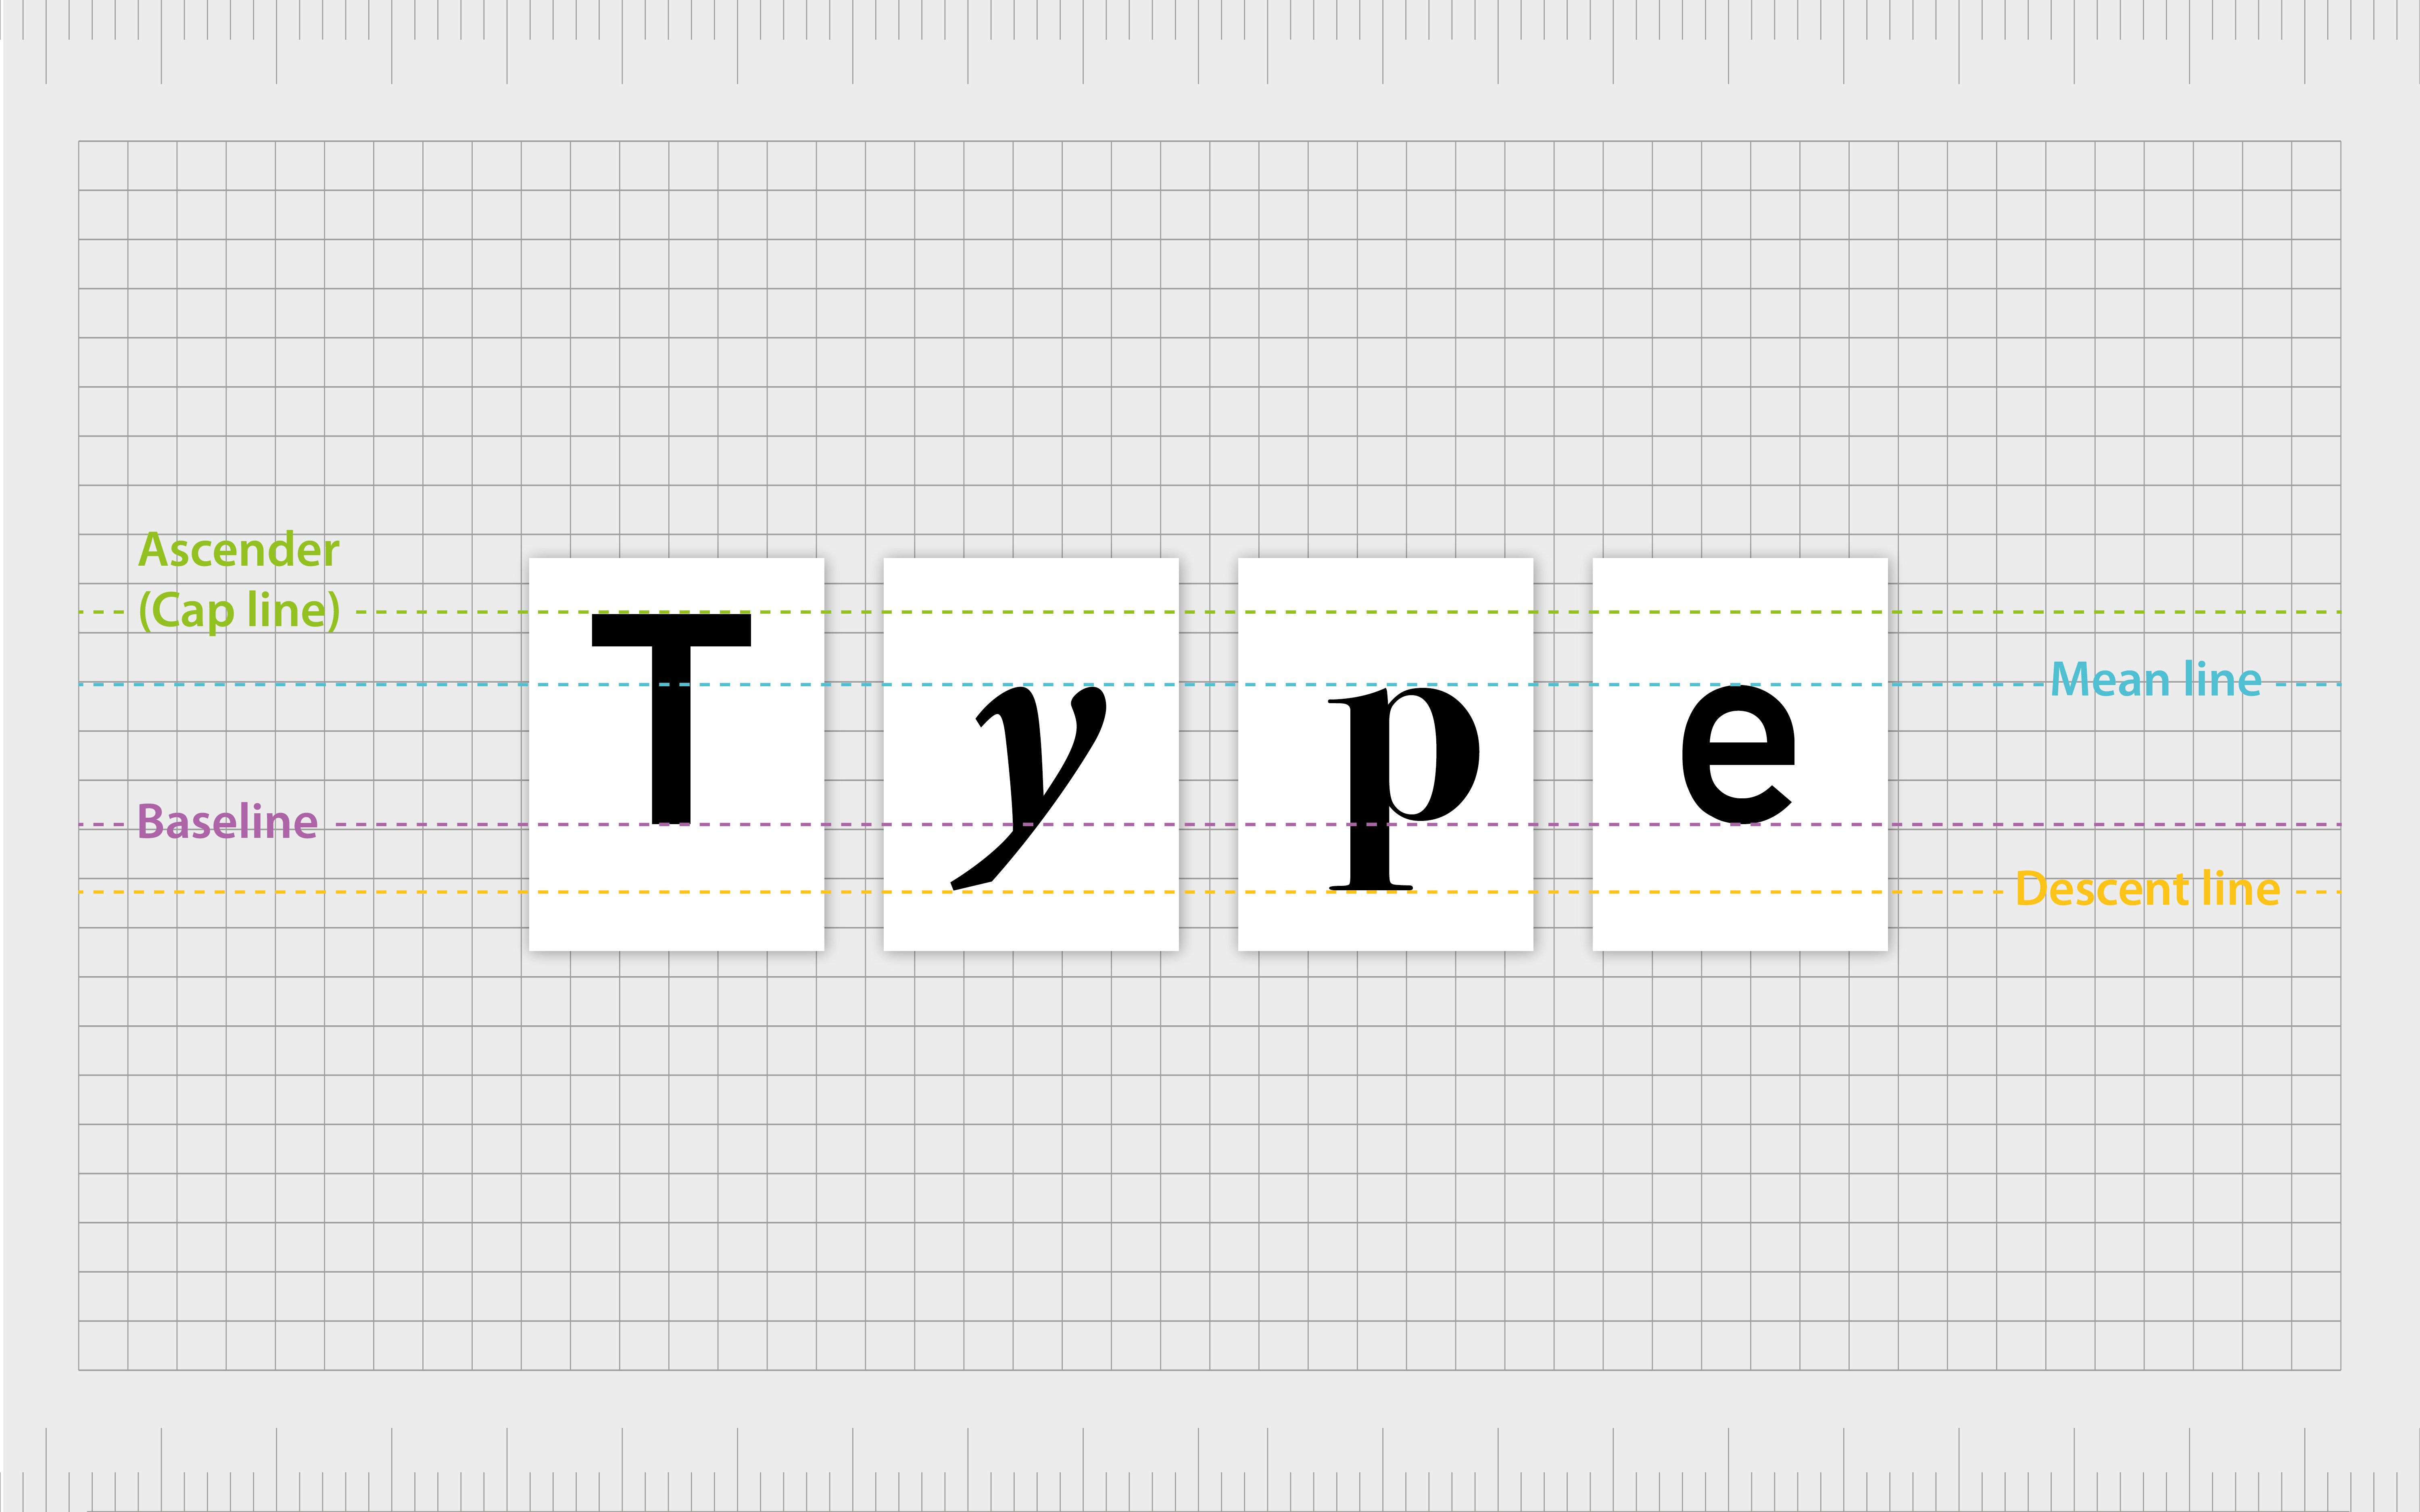 Typografi